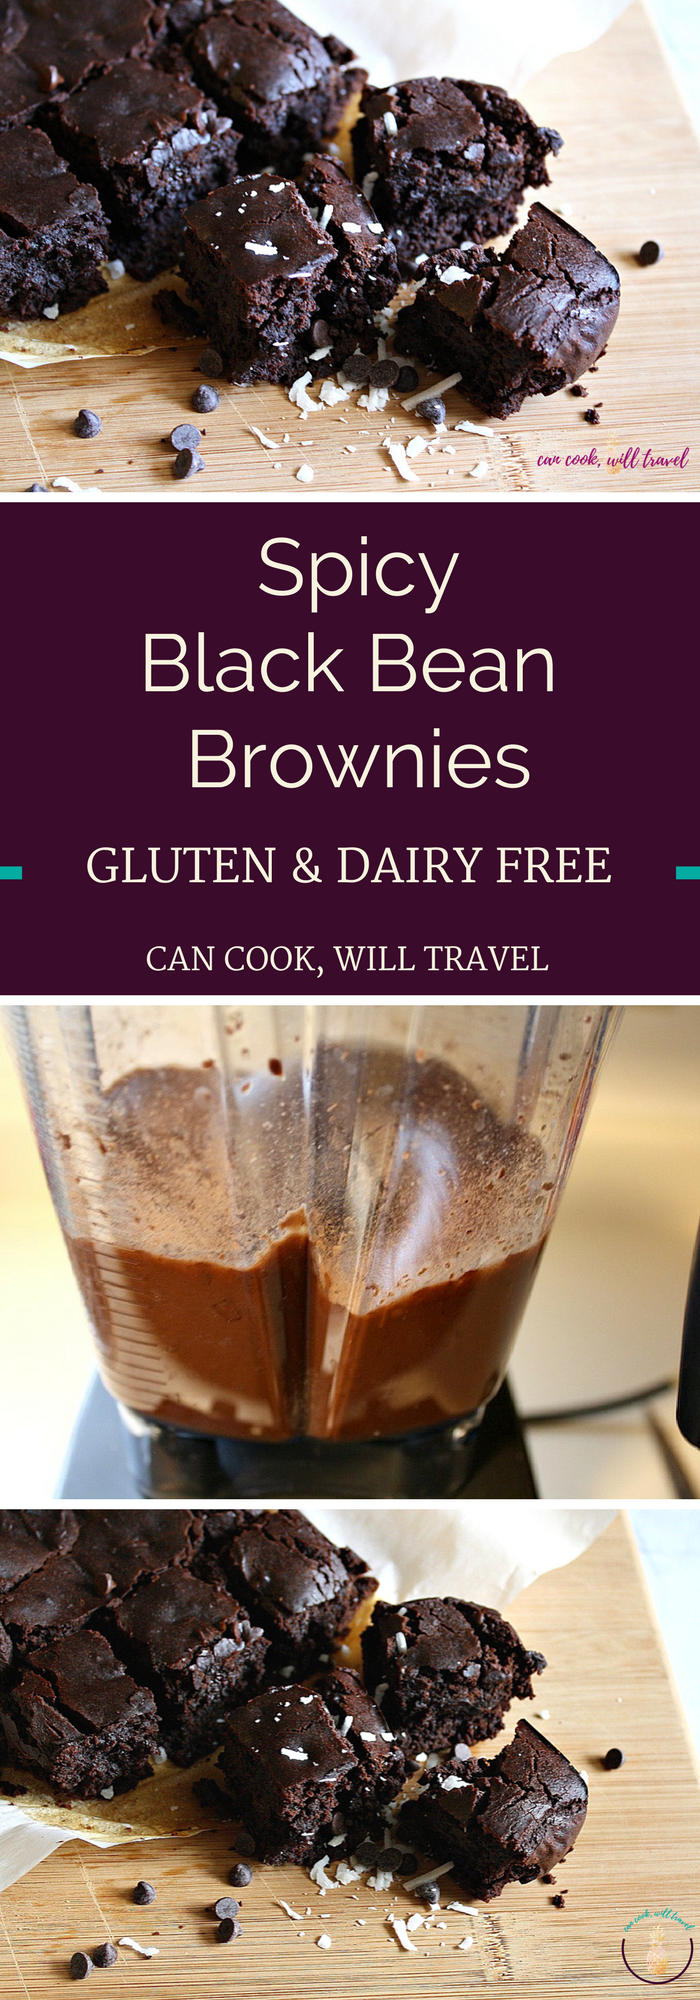 Spicy Black Bean Brownies_Collage2